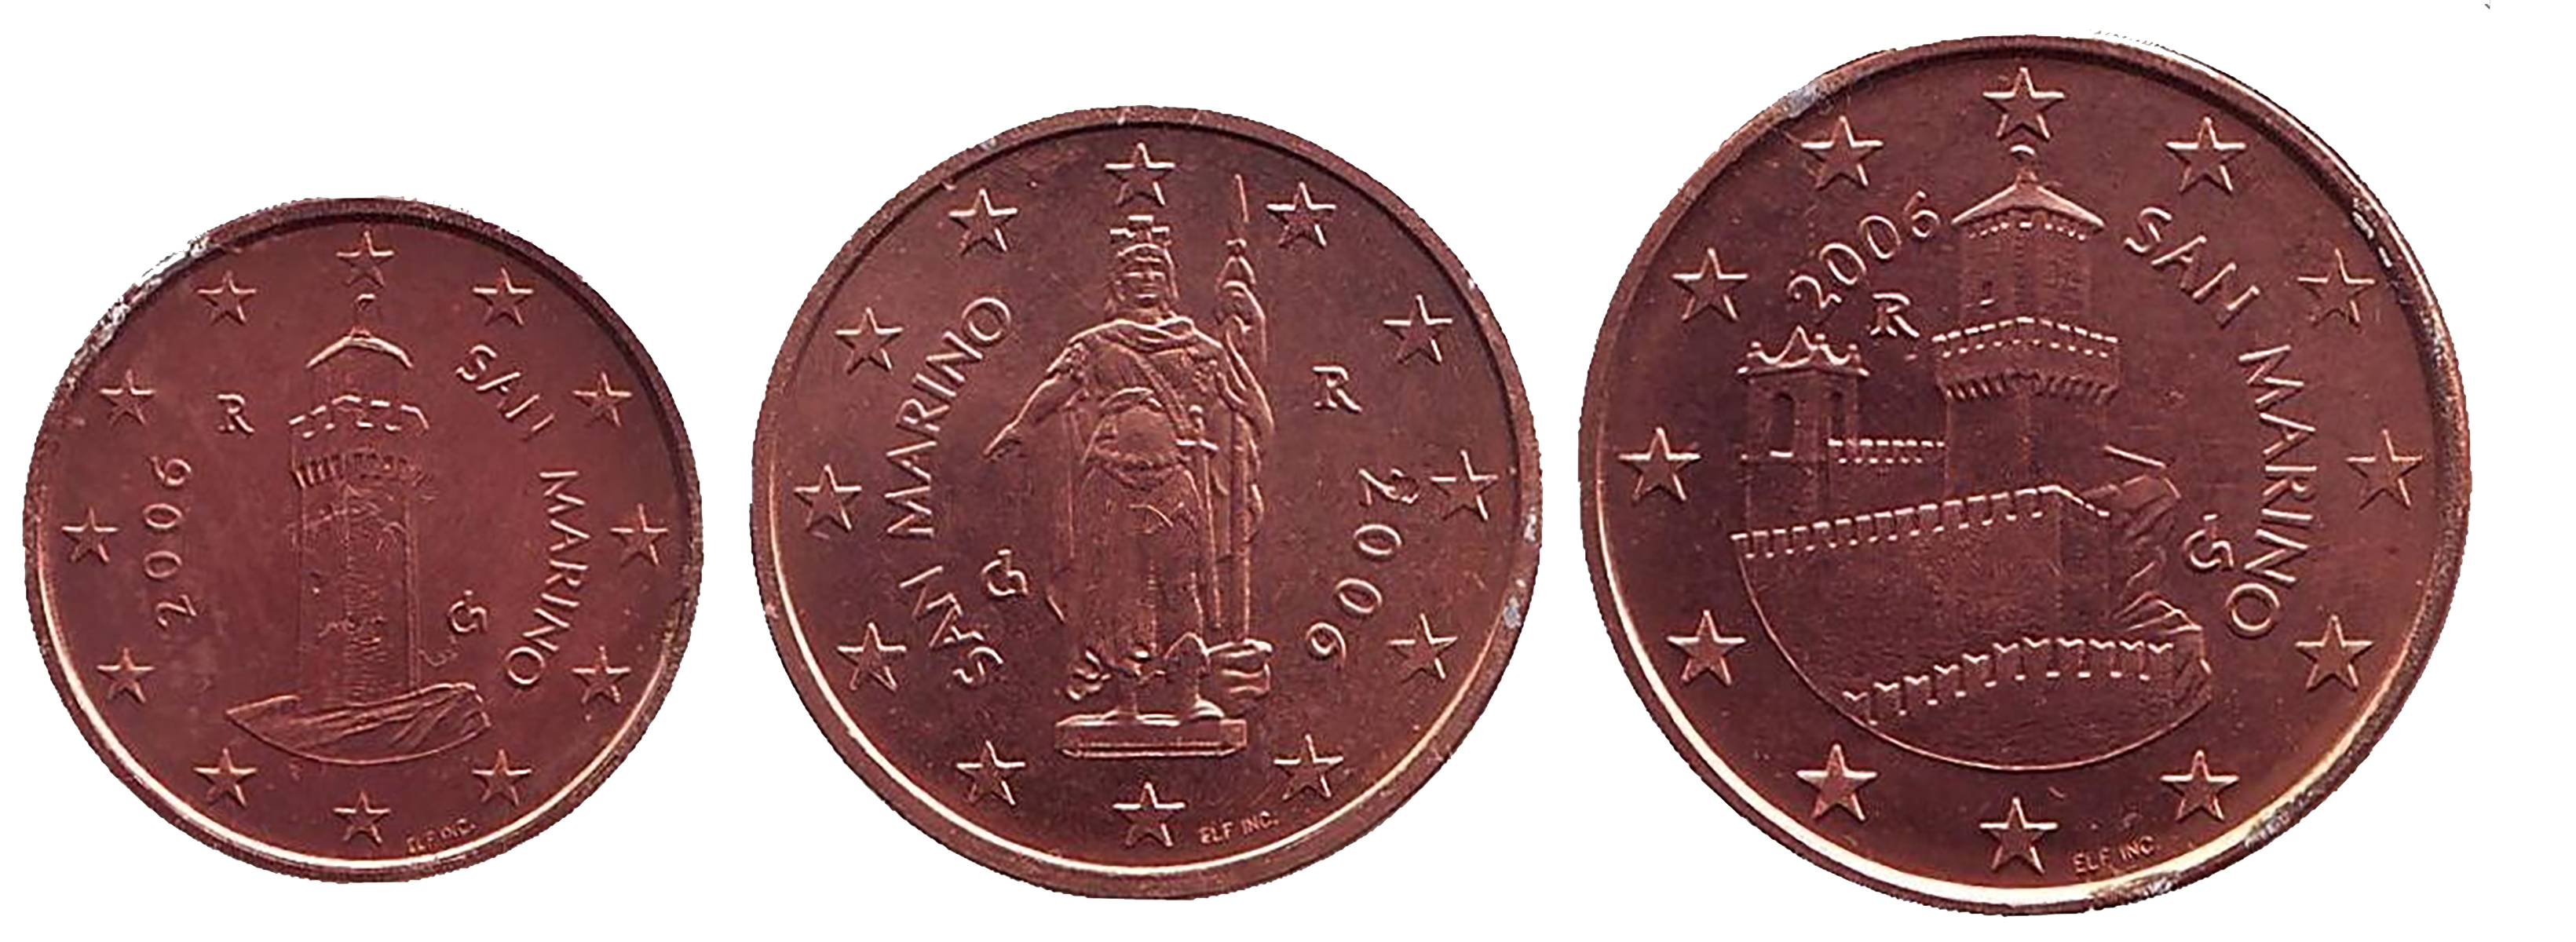 Монеты номиналом 1, 2 и 5 центов. Сан-Марино, 2006 (комплект из 3 монет)